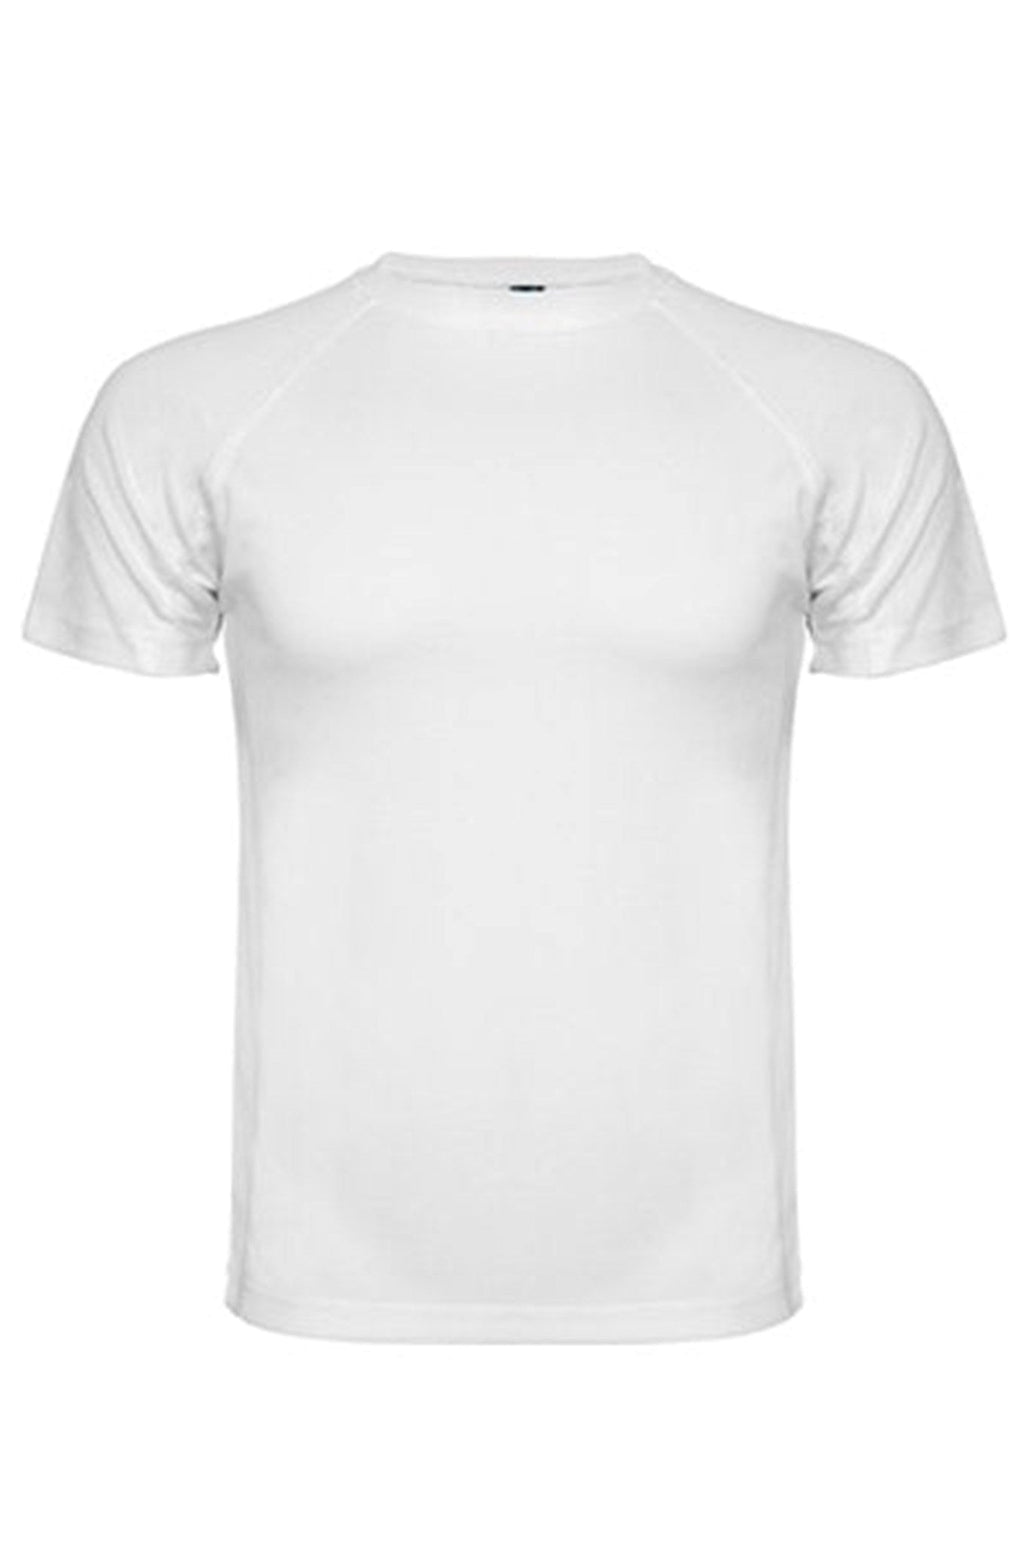 Harjoittelu T -paita - valkoinen